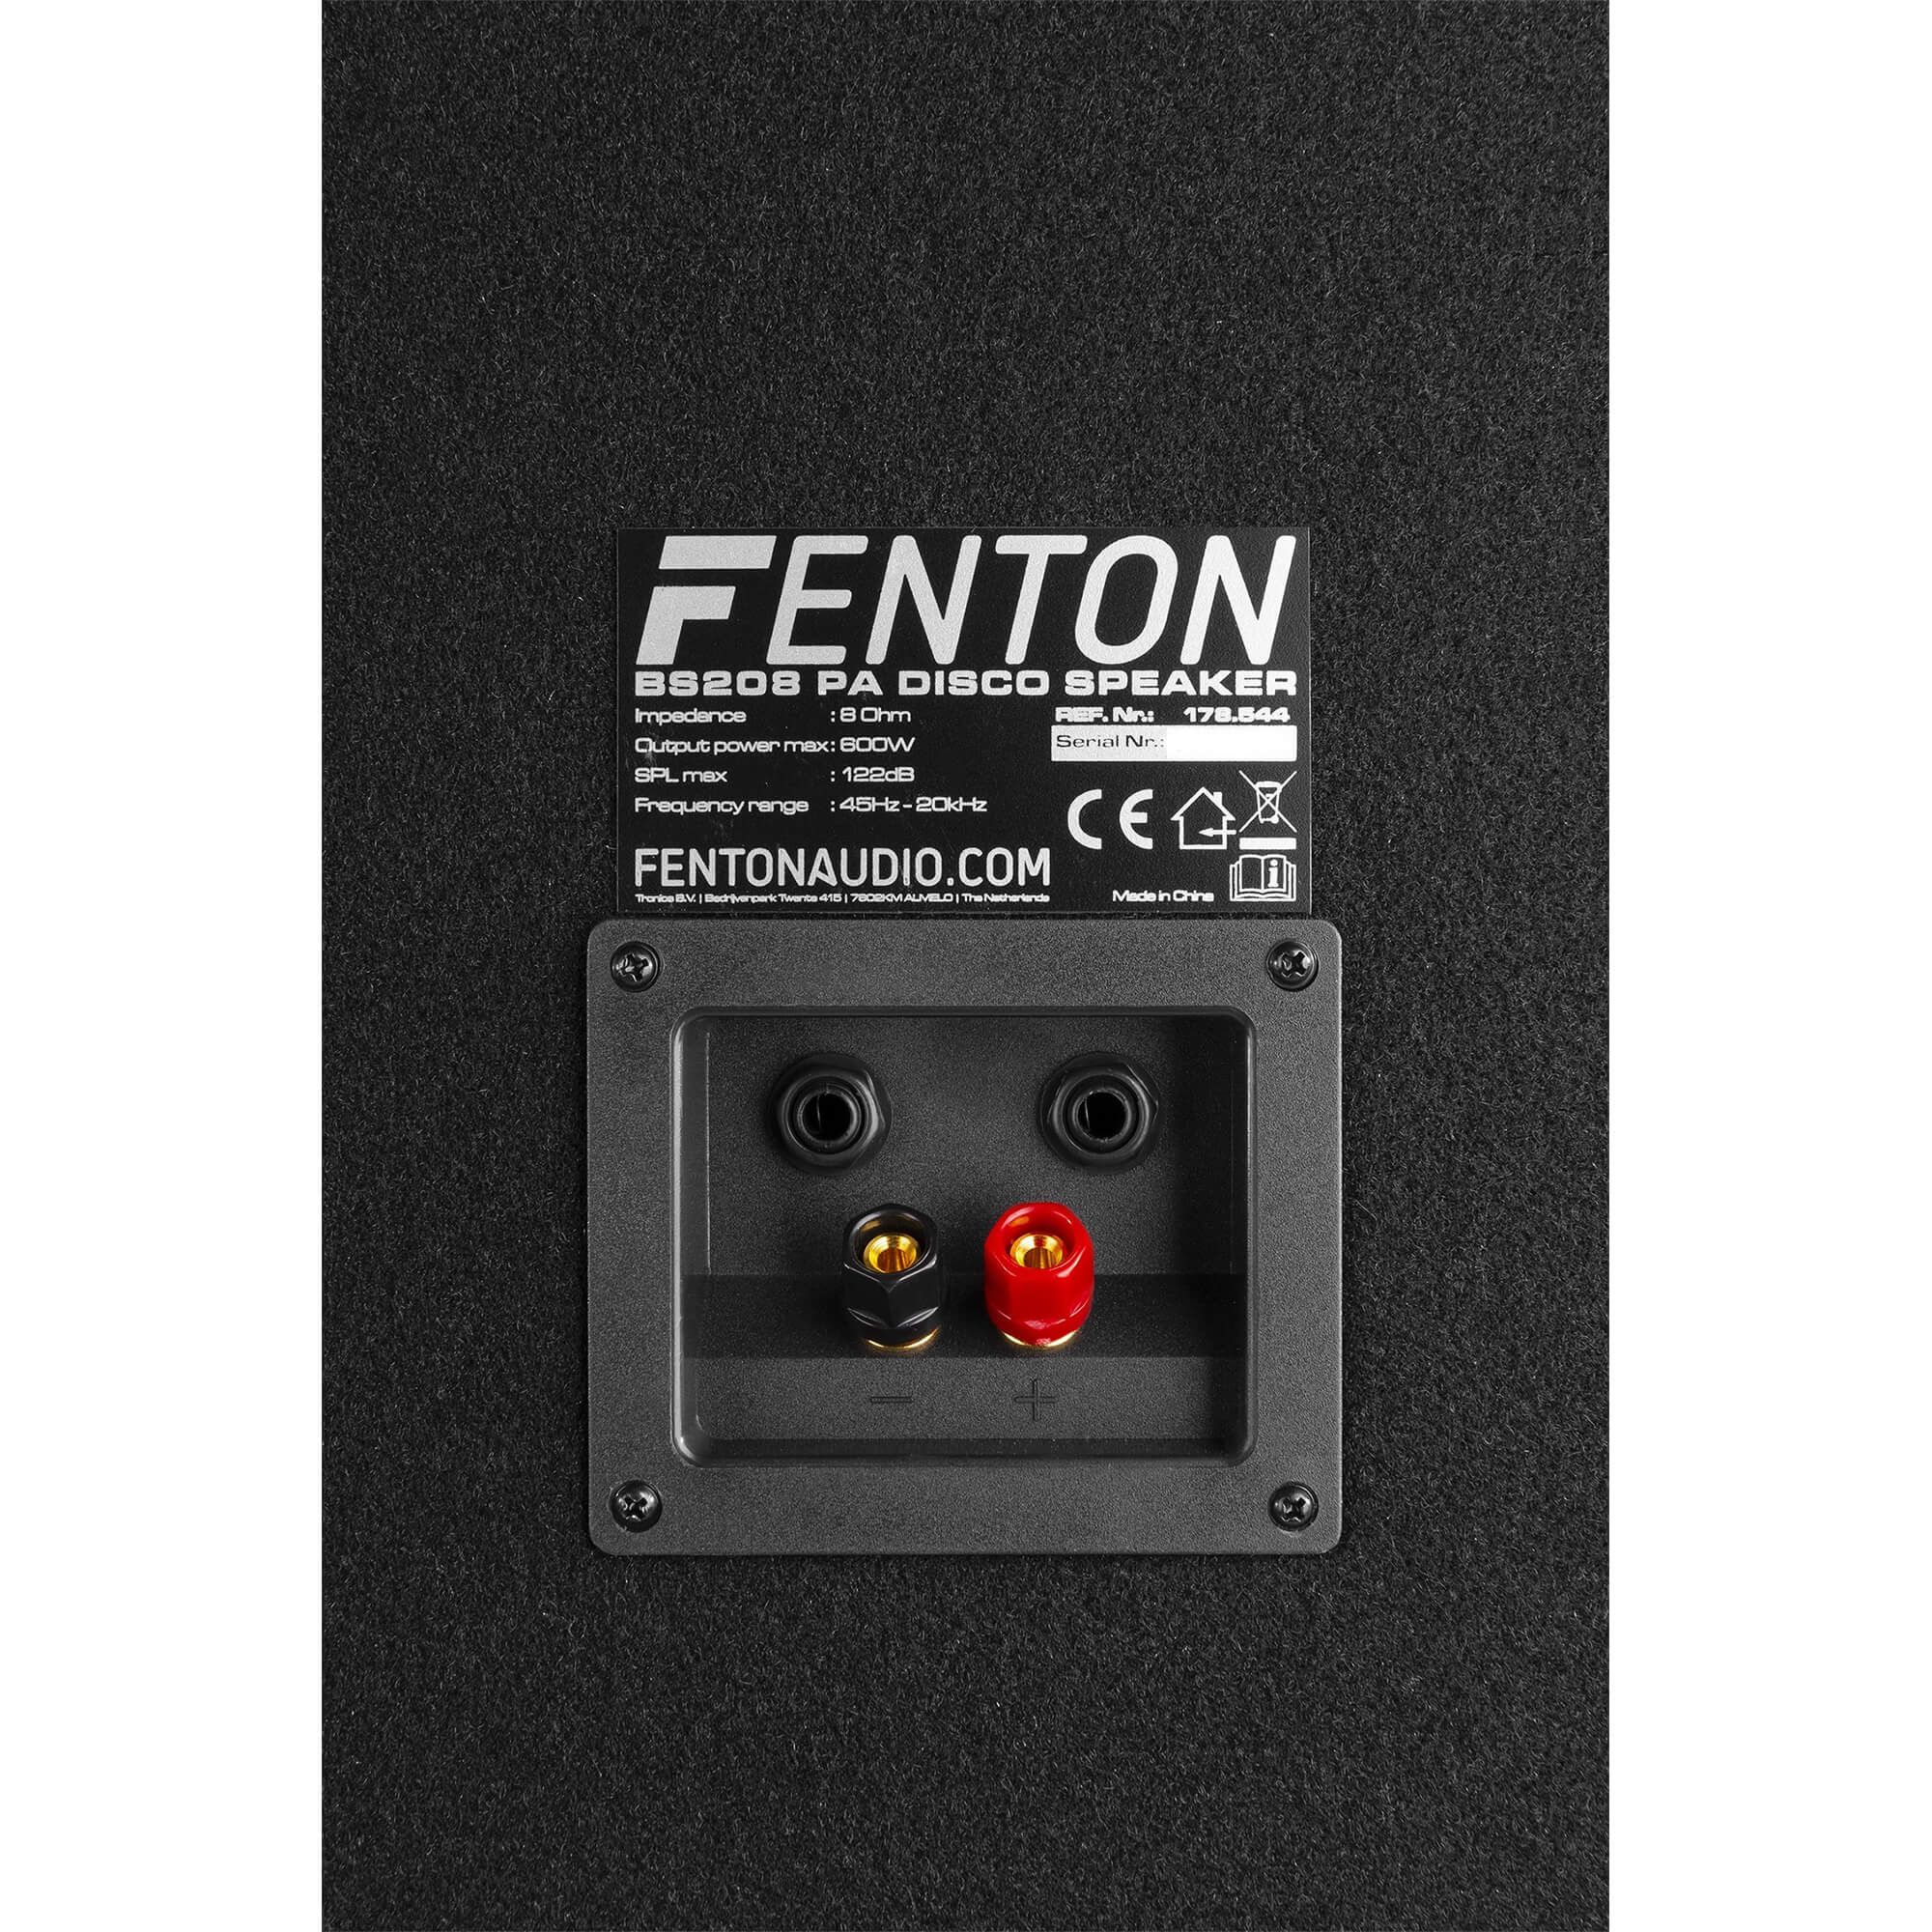 Fenton bs208 disco speaker 2x 8 met ledaposs 600w 7